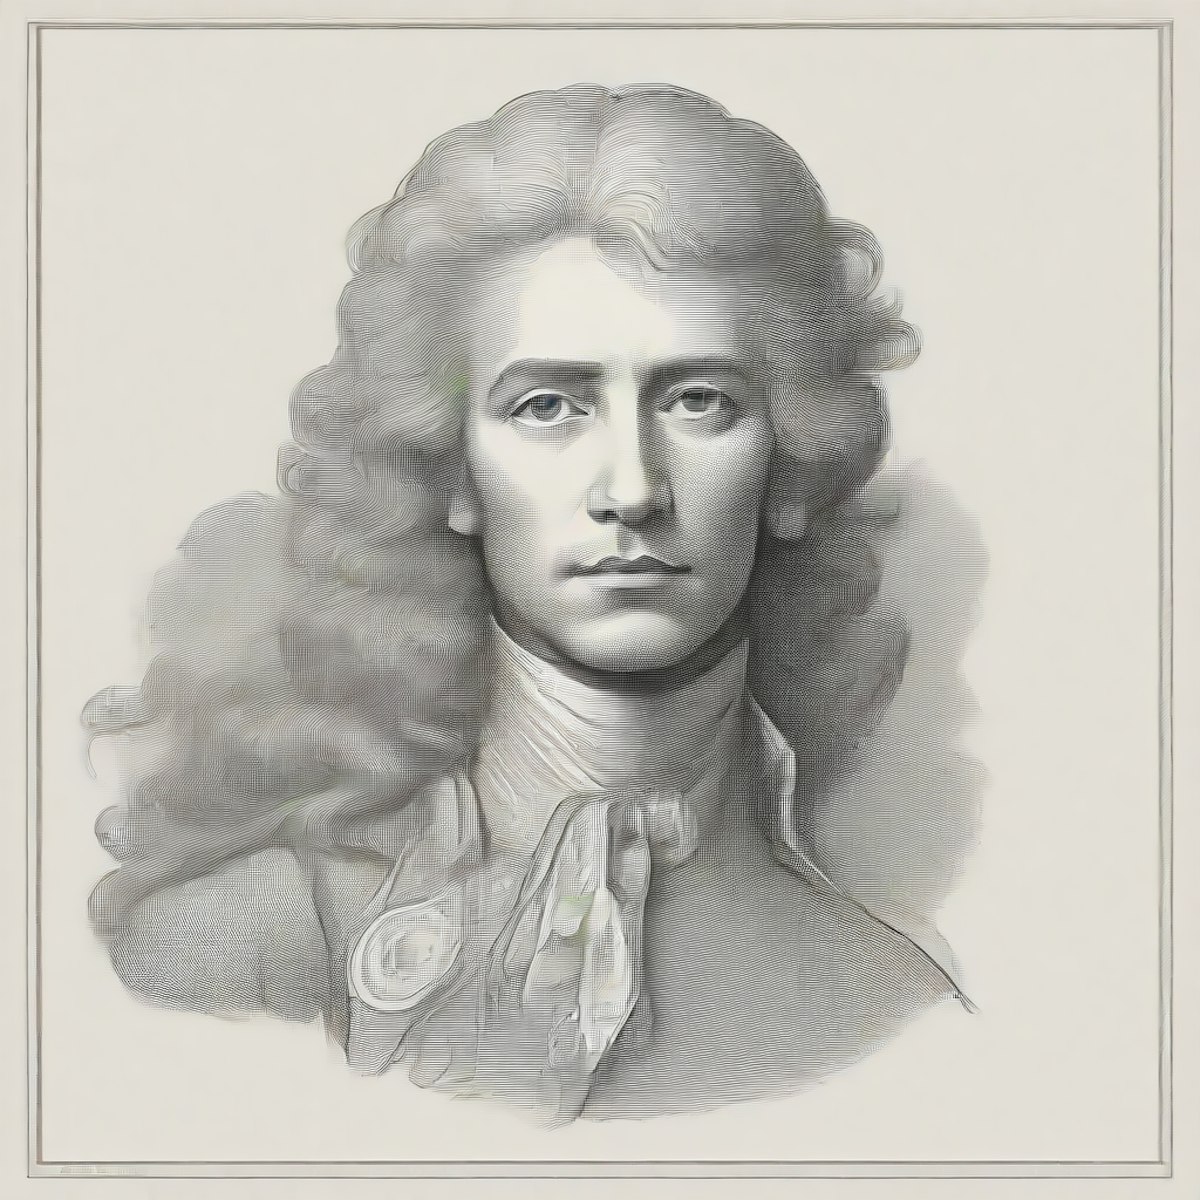 featured image - Análisis de gráficos de red: visualización de personajes de Hamilton como una red social